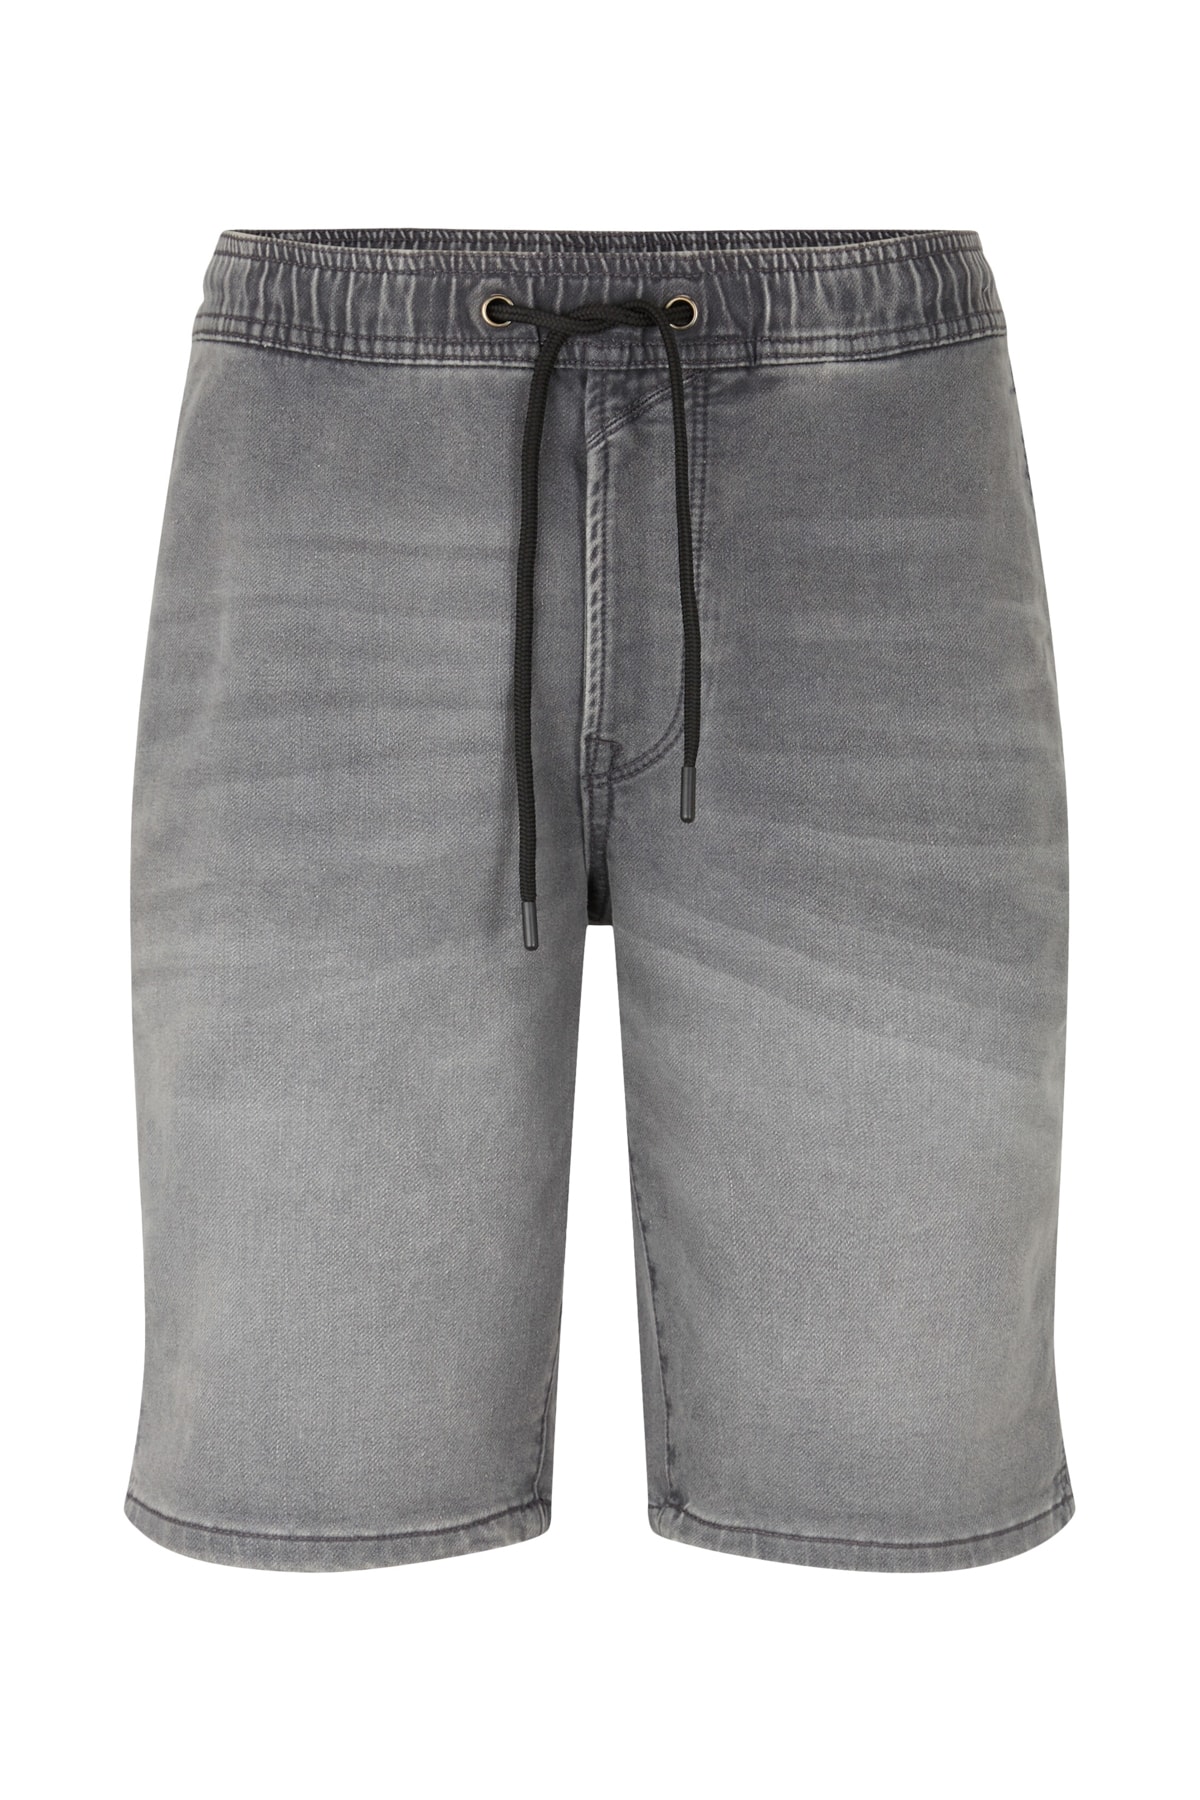 Джинсы - Серые - Прямые Tom Tailor Denim, серый джинсы серые широкие штанины tom tailor denim серый